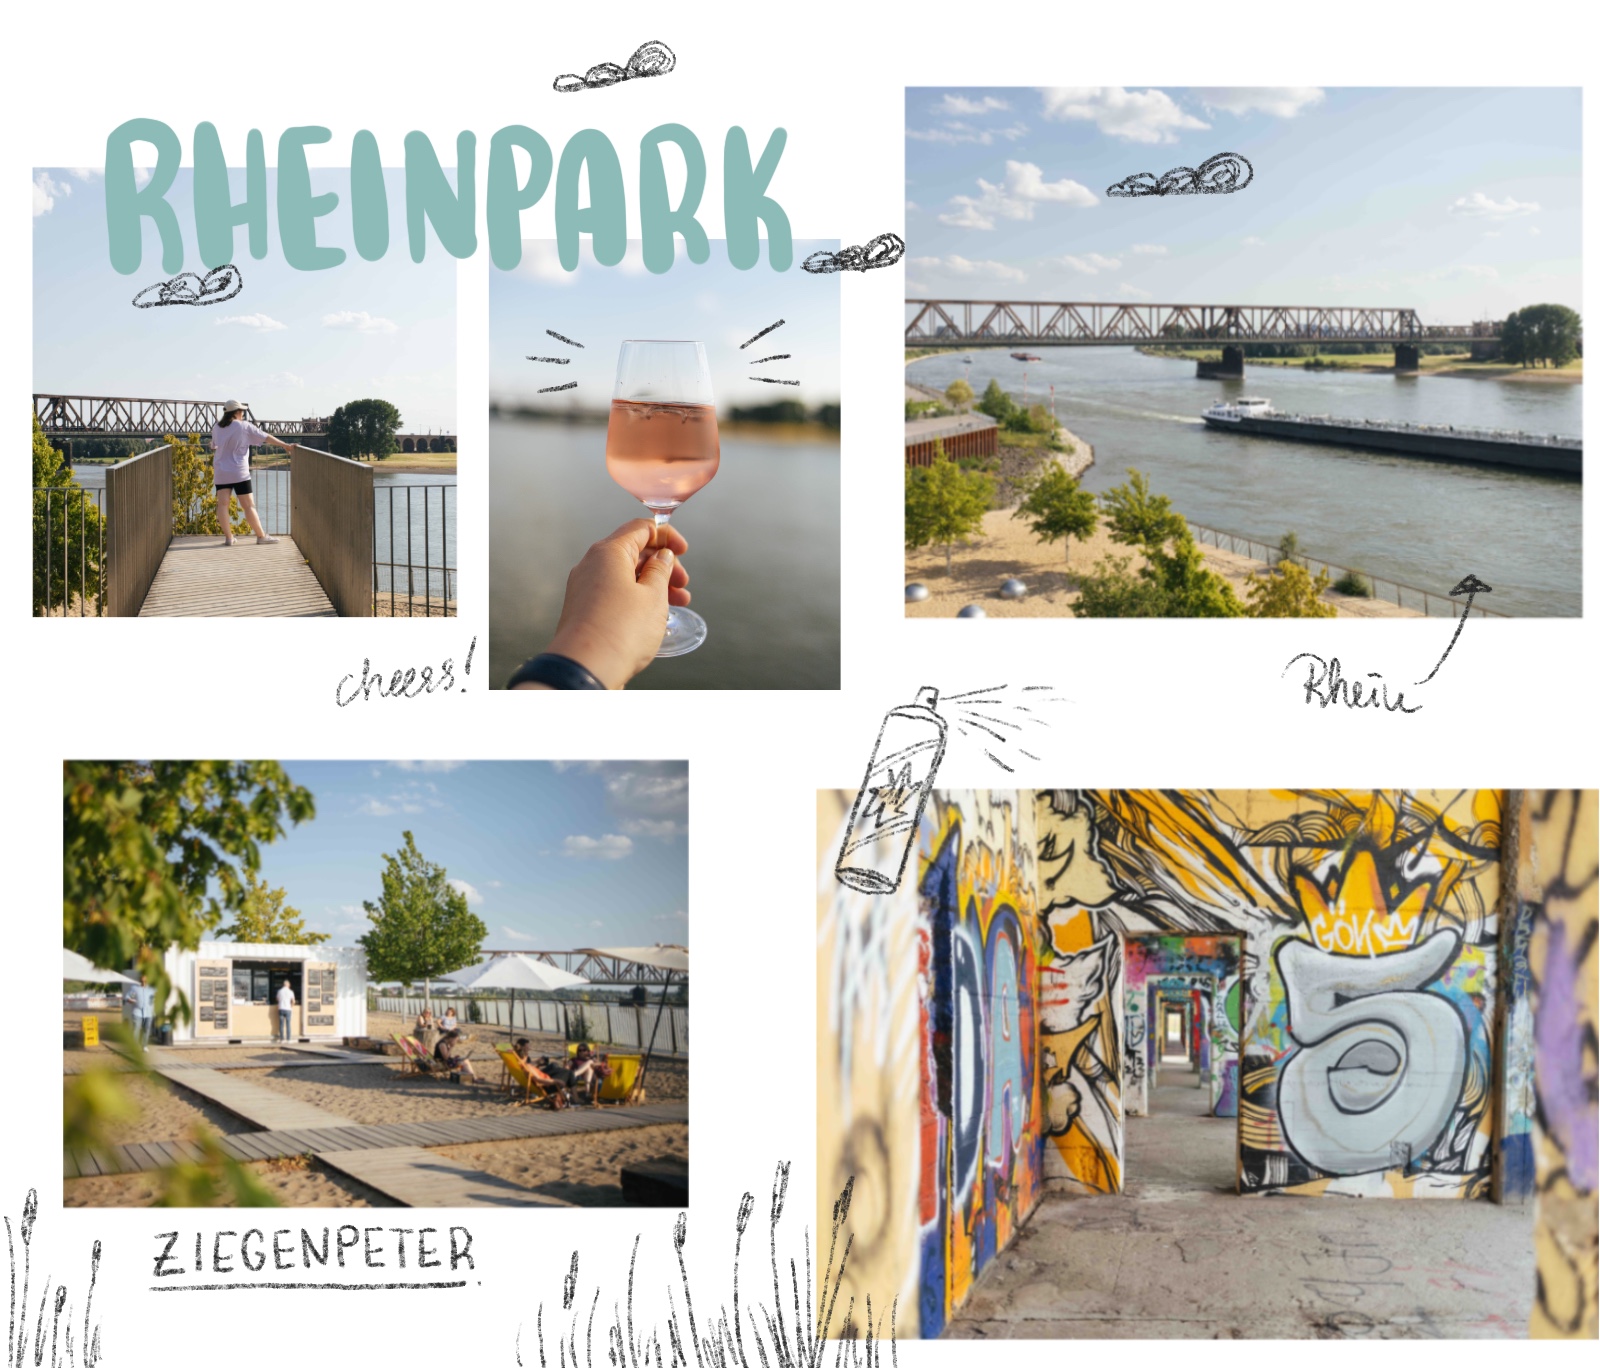 Städtereise Duisburg Ausflugstipp Rheinpark mit Ziegenpeter Biergarten
